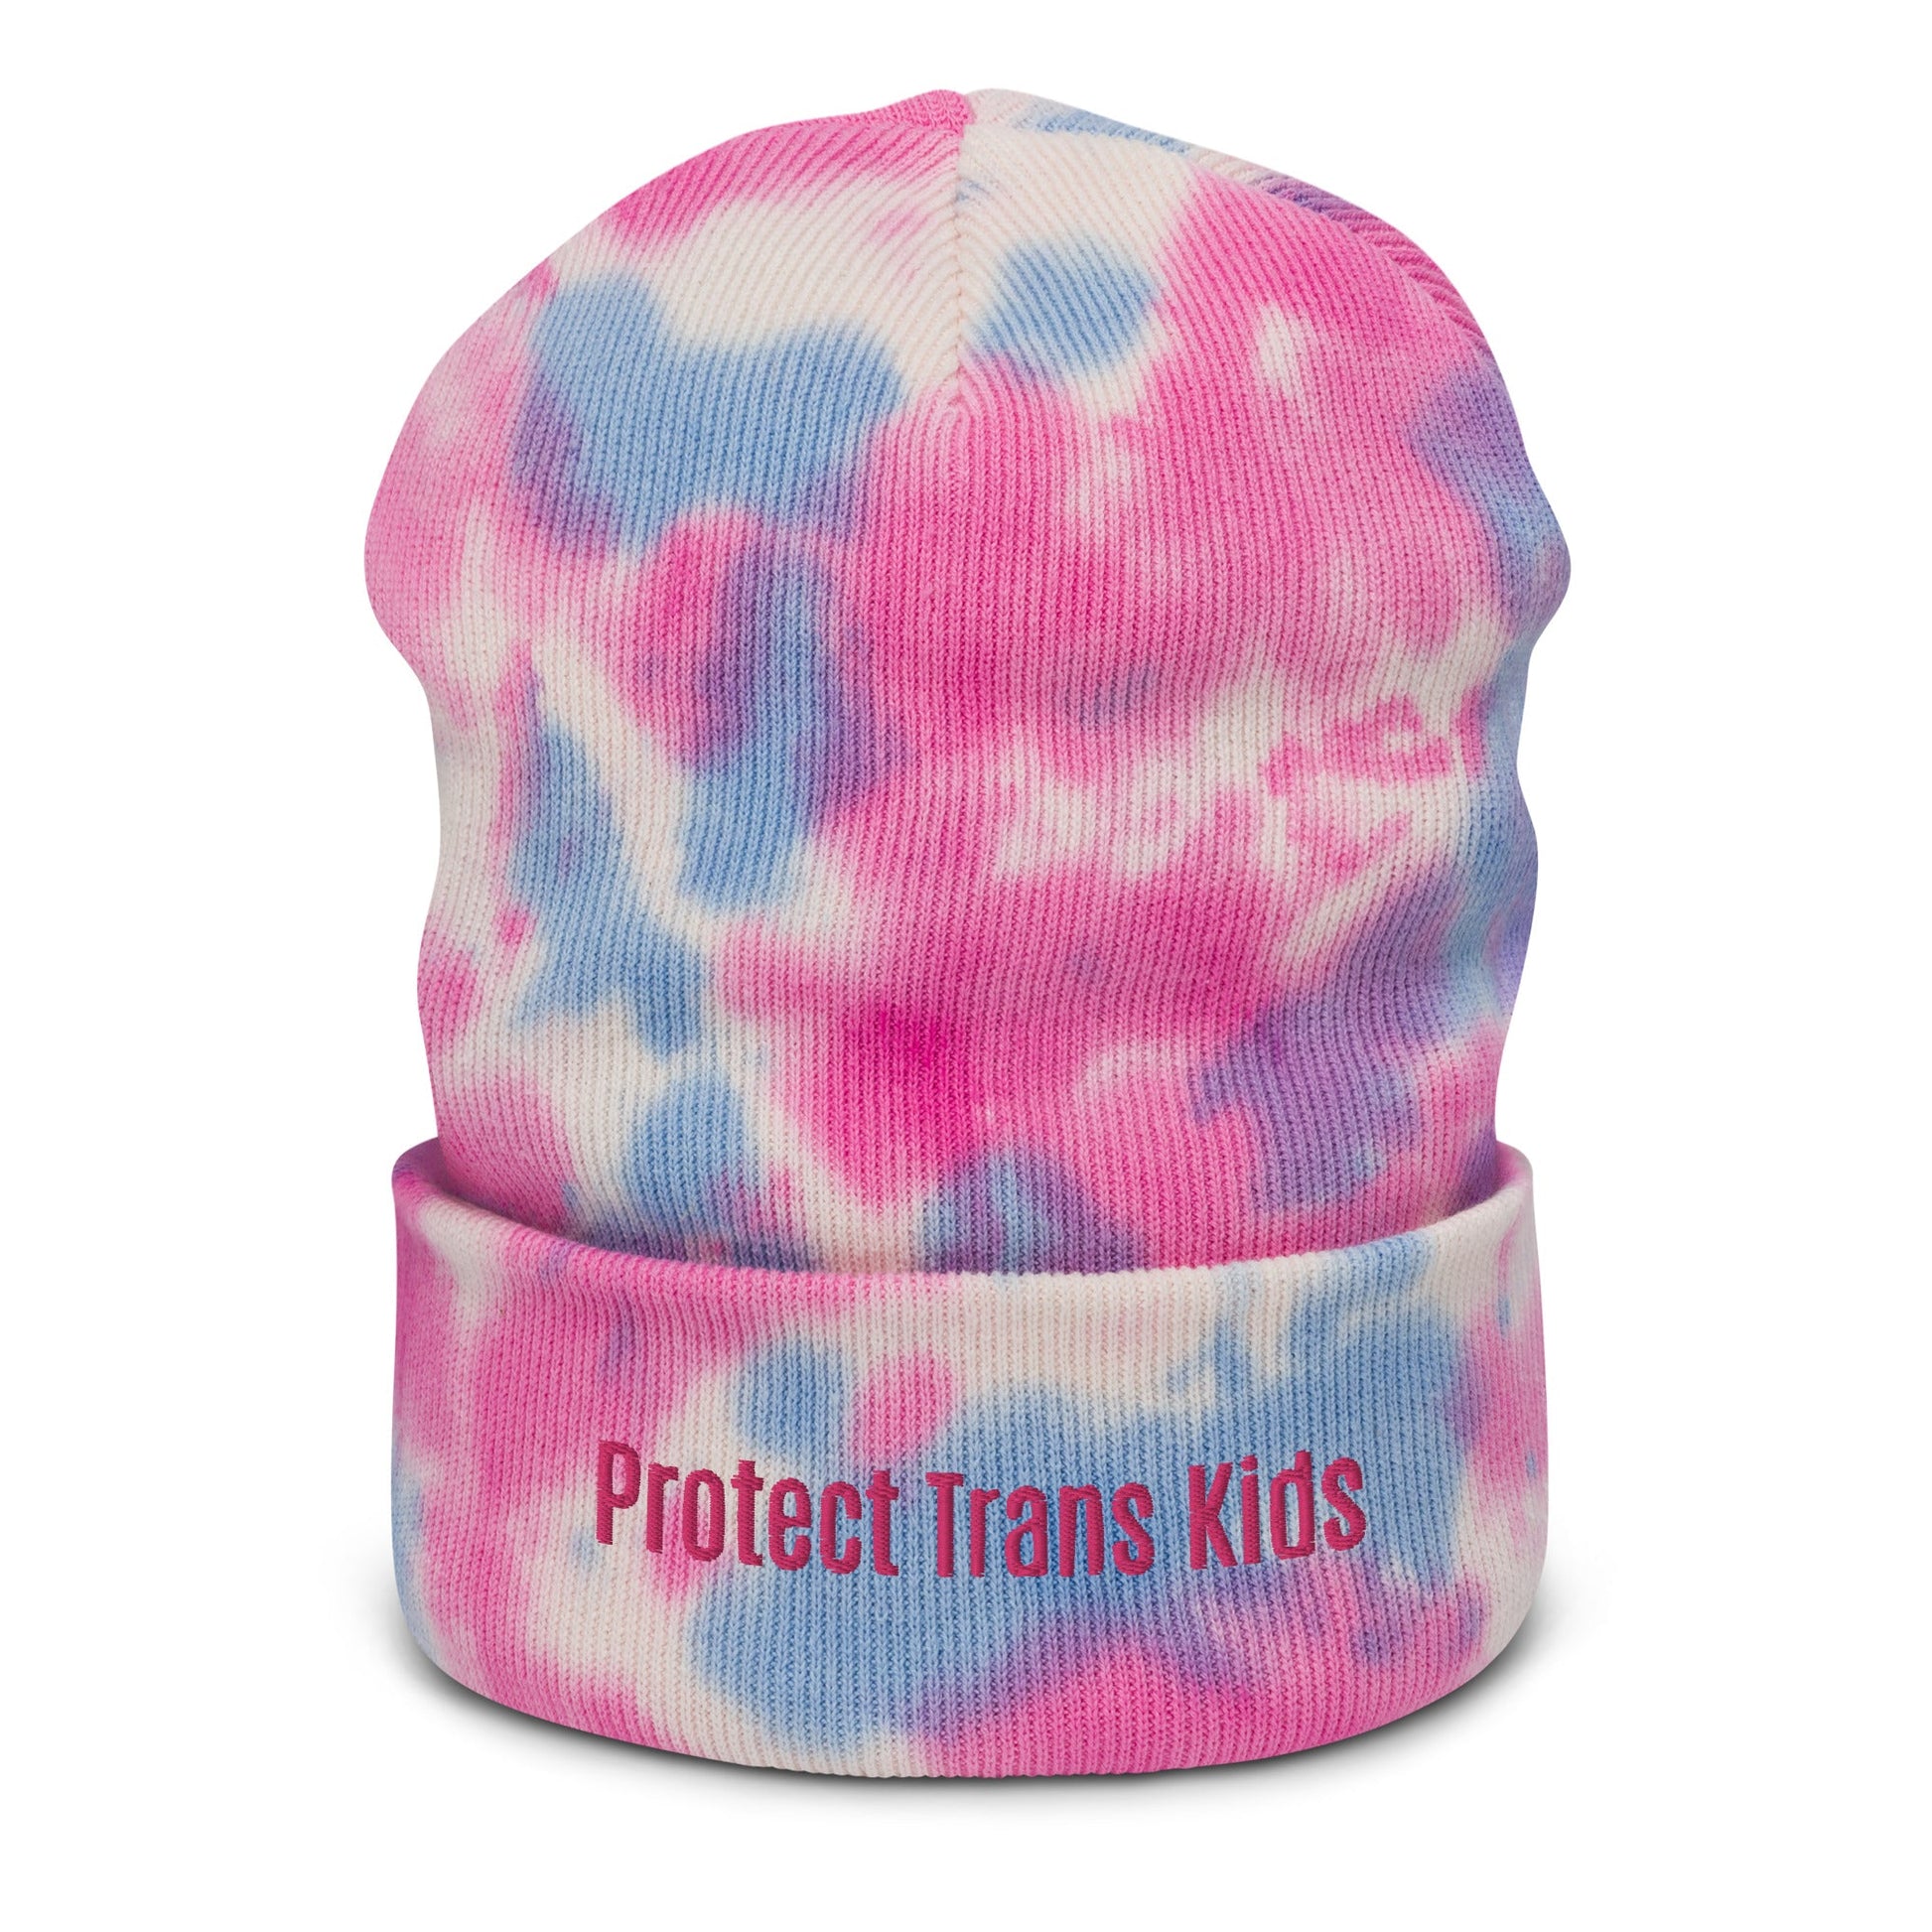 Protect Trans Kids Tie-Dye Beanie - dom+bomb